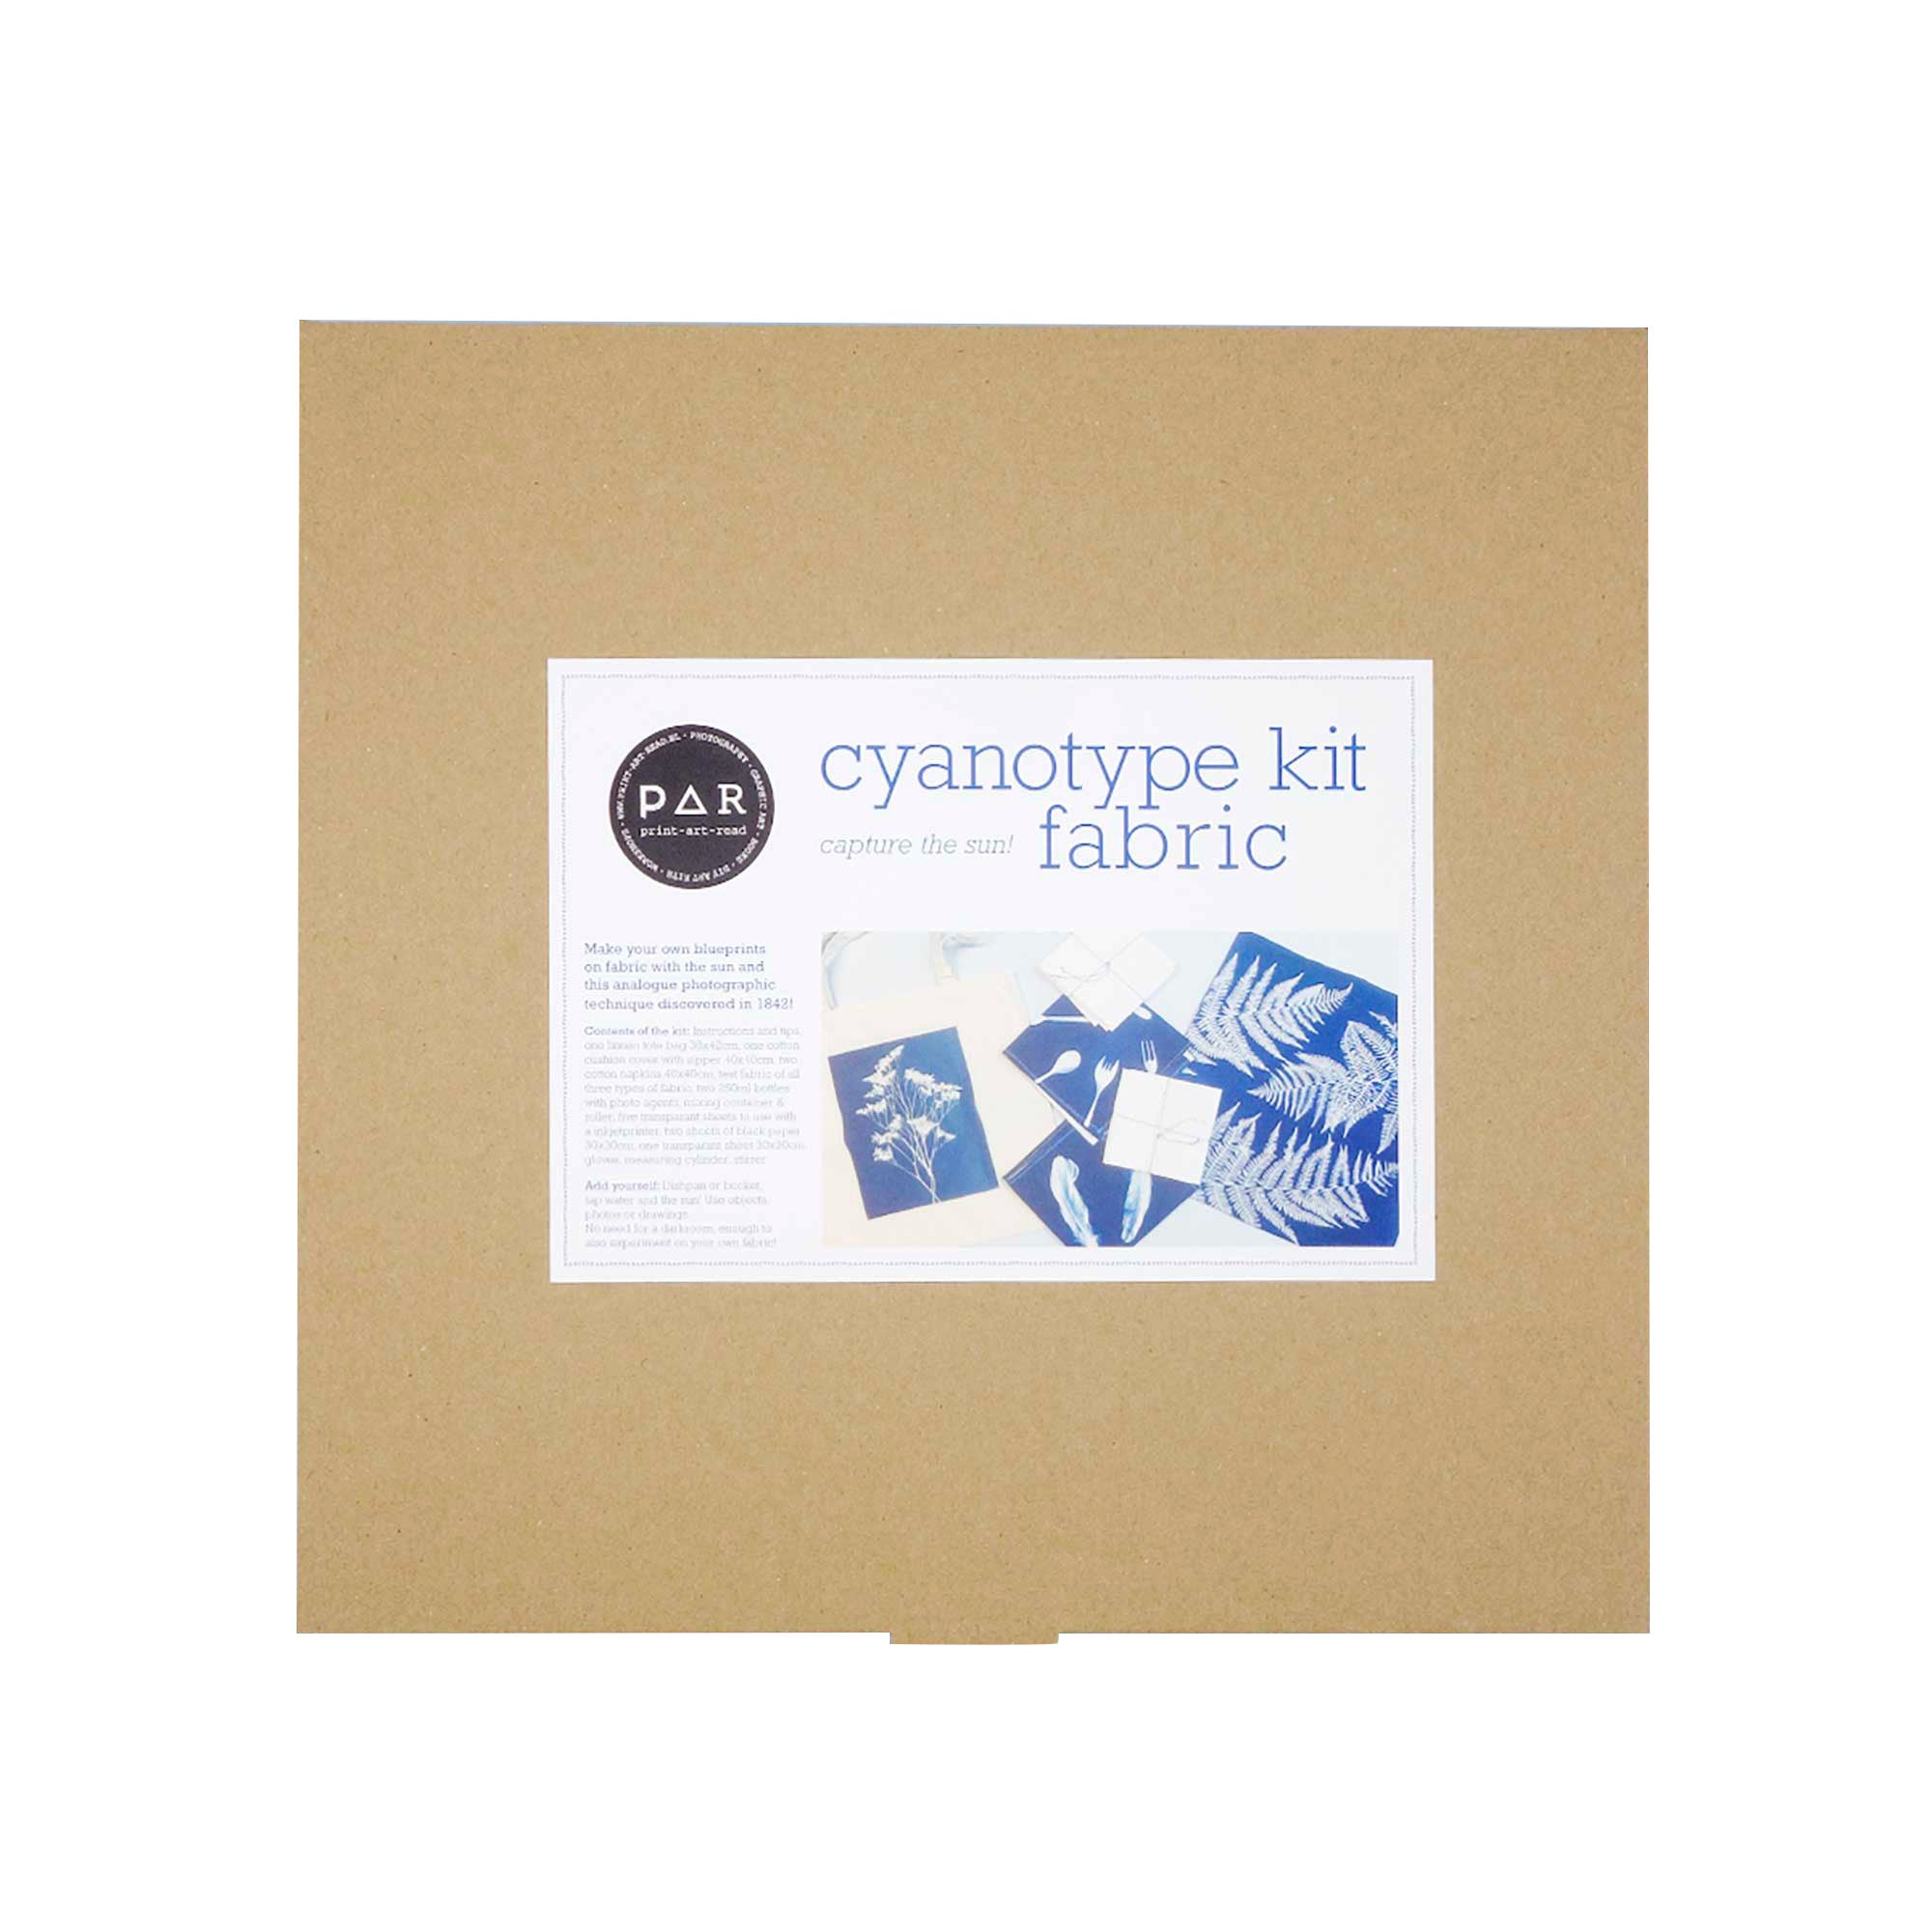 Buy Cyanotype Print Online in India 